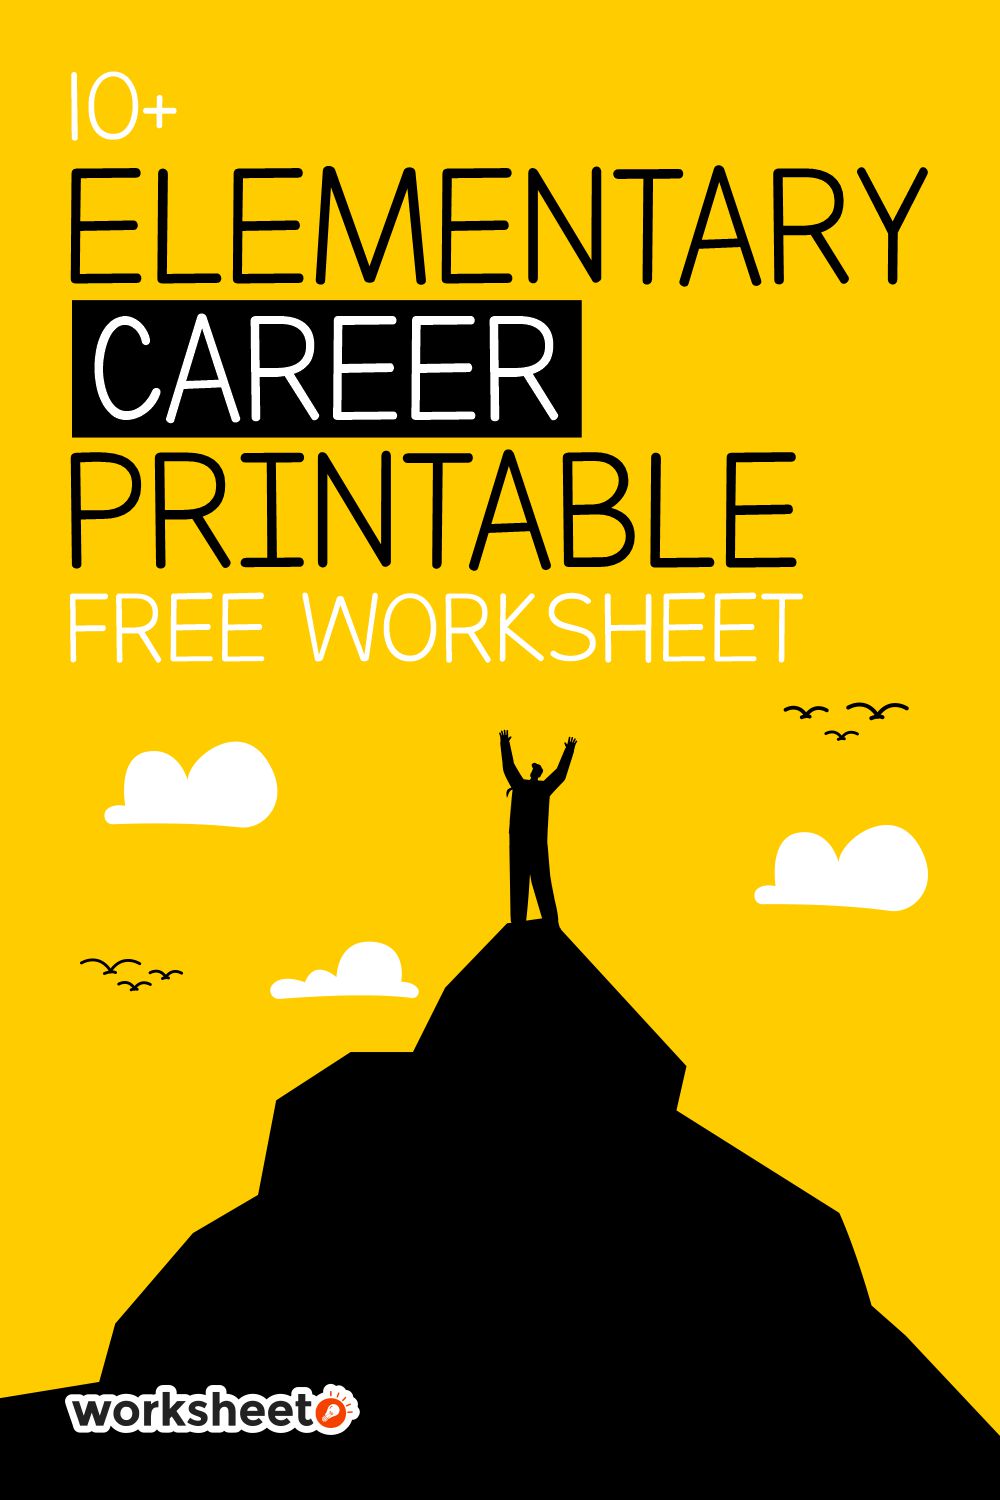 Elementary Career Printable Free Worksheet